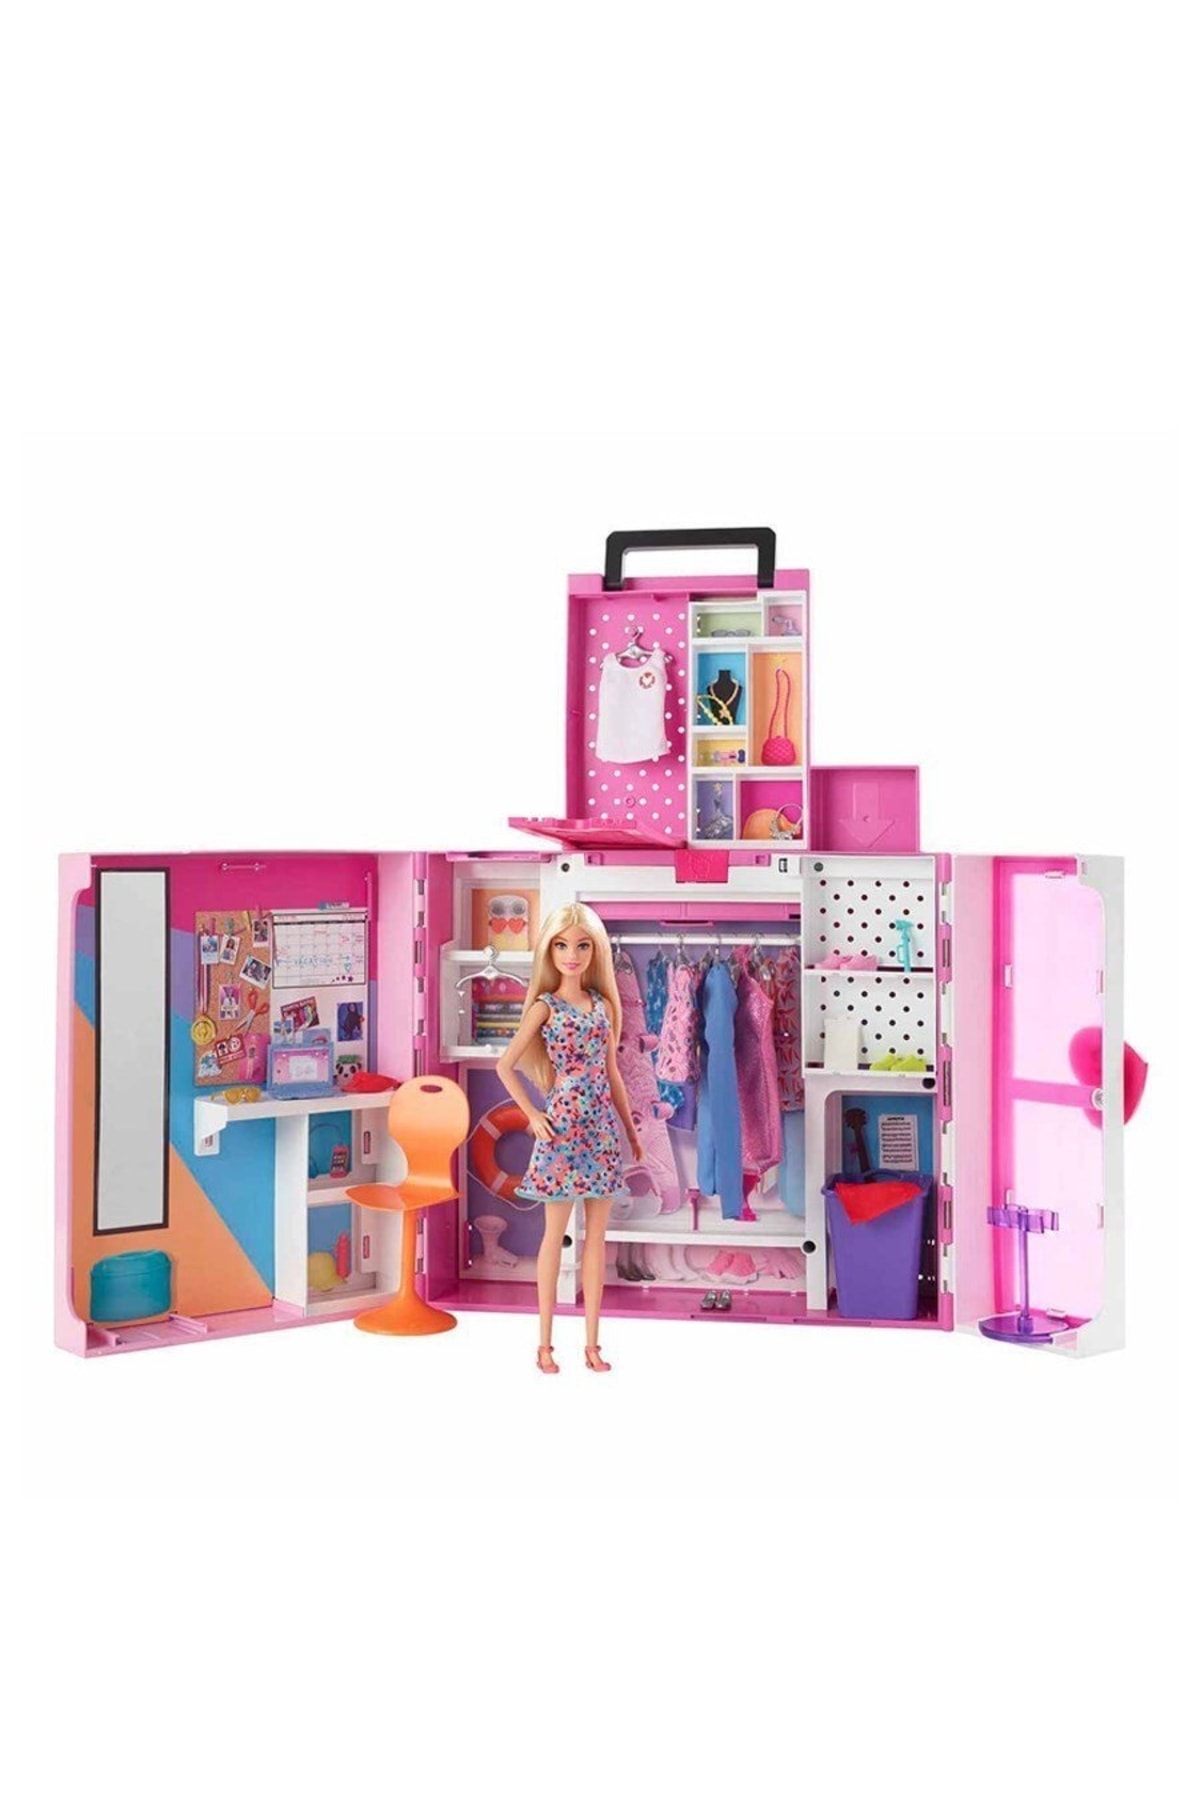 Barbie Ve Yeni Rüya Dolabı Oyun Seti